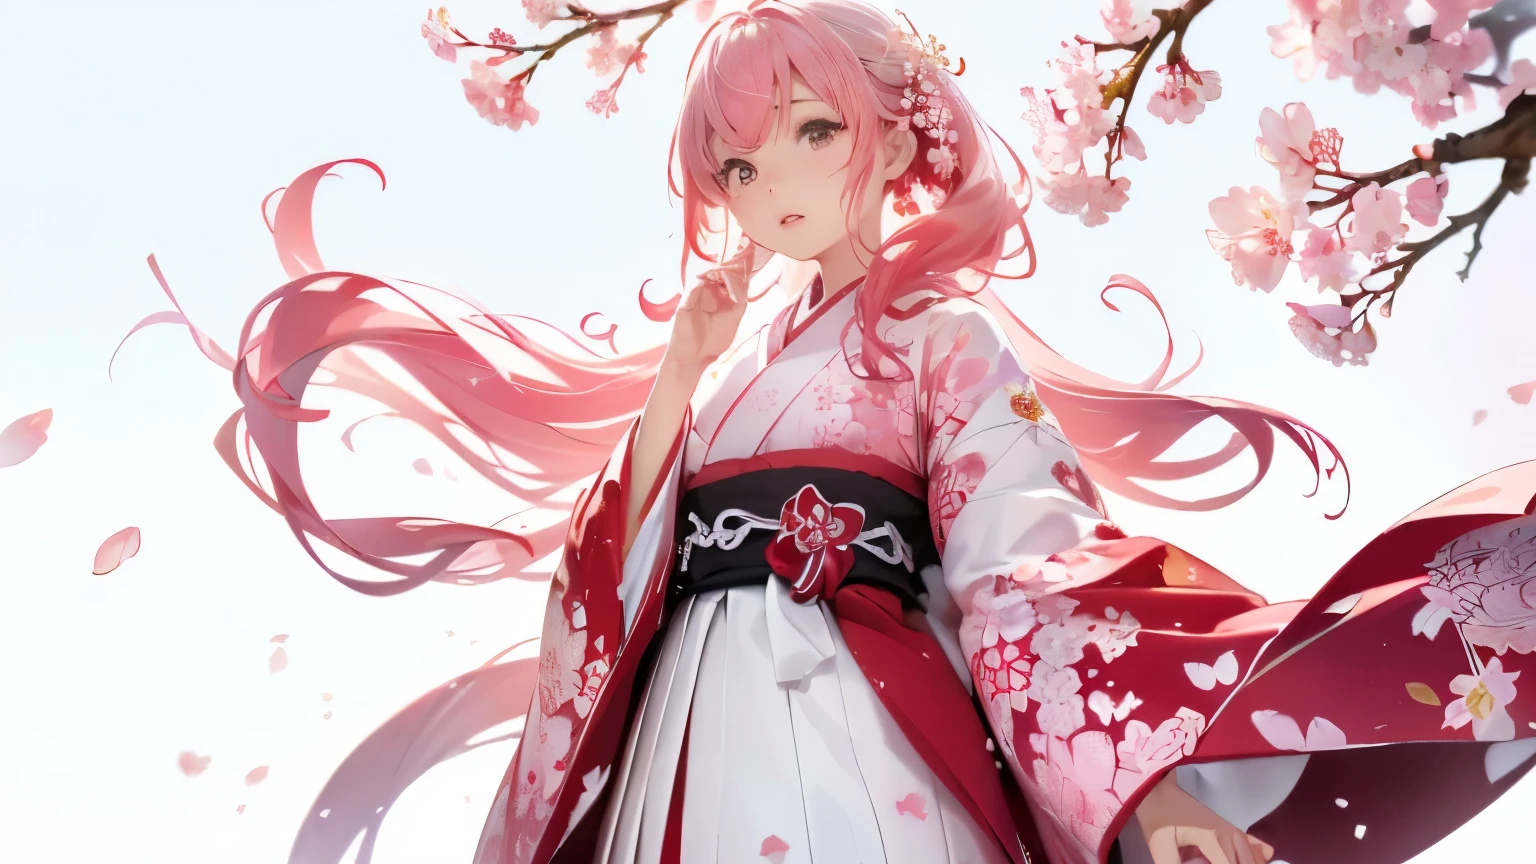 (((Kirschblüten-Hintergrund、Weiße Welt)))、Einheit 8k Hintergrundbild、ultra-detailliert、schön und ästhetisch、Meisterwerk、höchste Qualität、(Gewirrの、Mandala、Gewirr、Gewirr)、(Fraktale Kunst:1.3)、ein Mädchen、Wunderschönes langes rosa Haar、japanisch、Großes Rosa、roter Kimono、Japanische Kleider、Sehr detailiert、dynamischer Winkel、Cowboy-Schuss、Die schönste Form ist das Chaos、elegant、Brutalismus-Design、leuchtende Farben、Romantik、Atmosphäre、Ecstasy-Note、Streaming-Notizen sind sichtbar、(((weißer Hintergrund、rein weißer Hintergrund、roter Kreis))),Spazierengehen und die Kirschblüten bewundern。